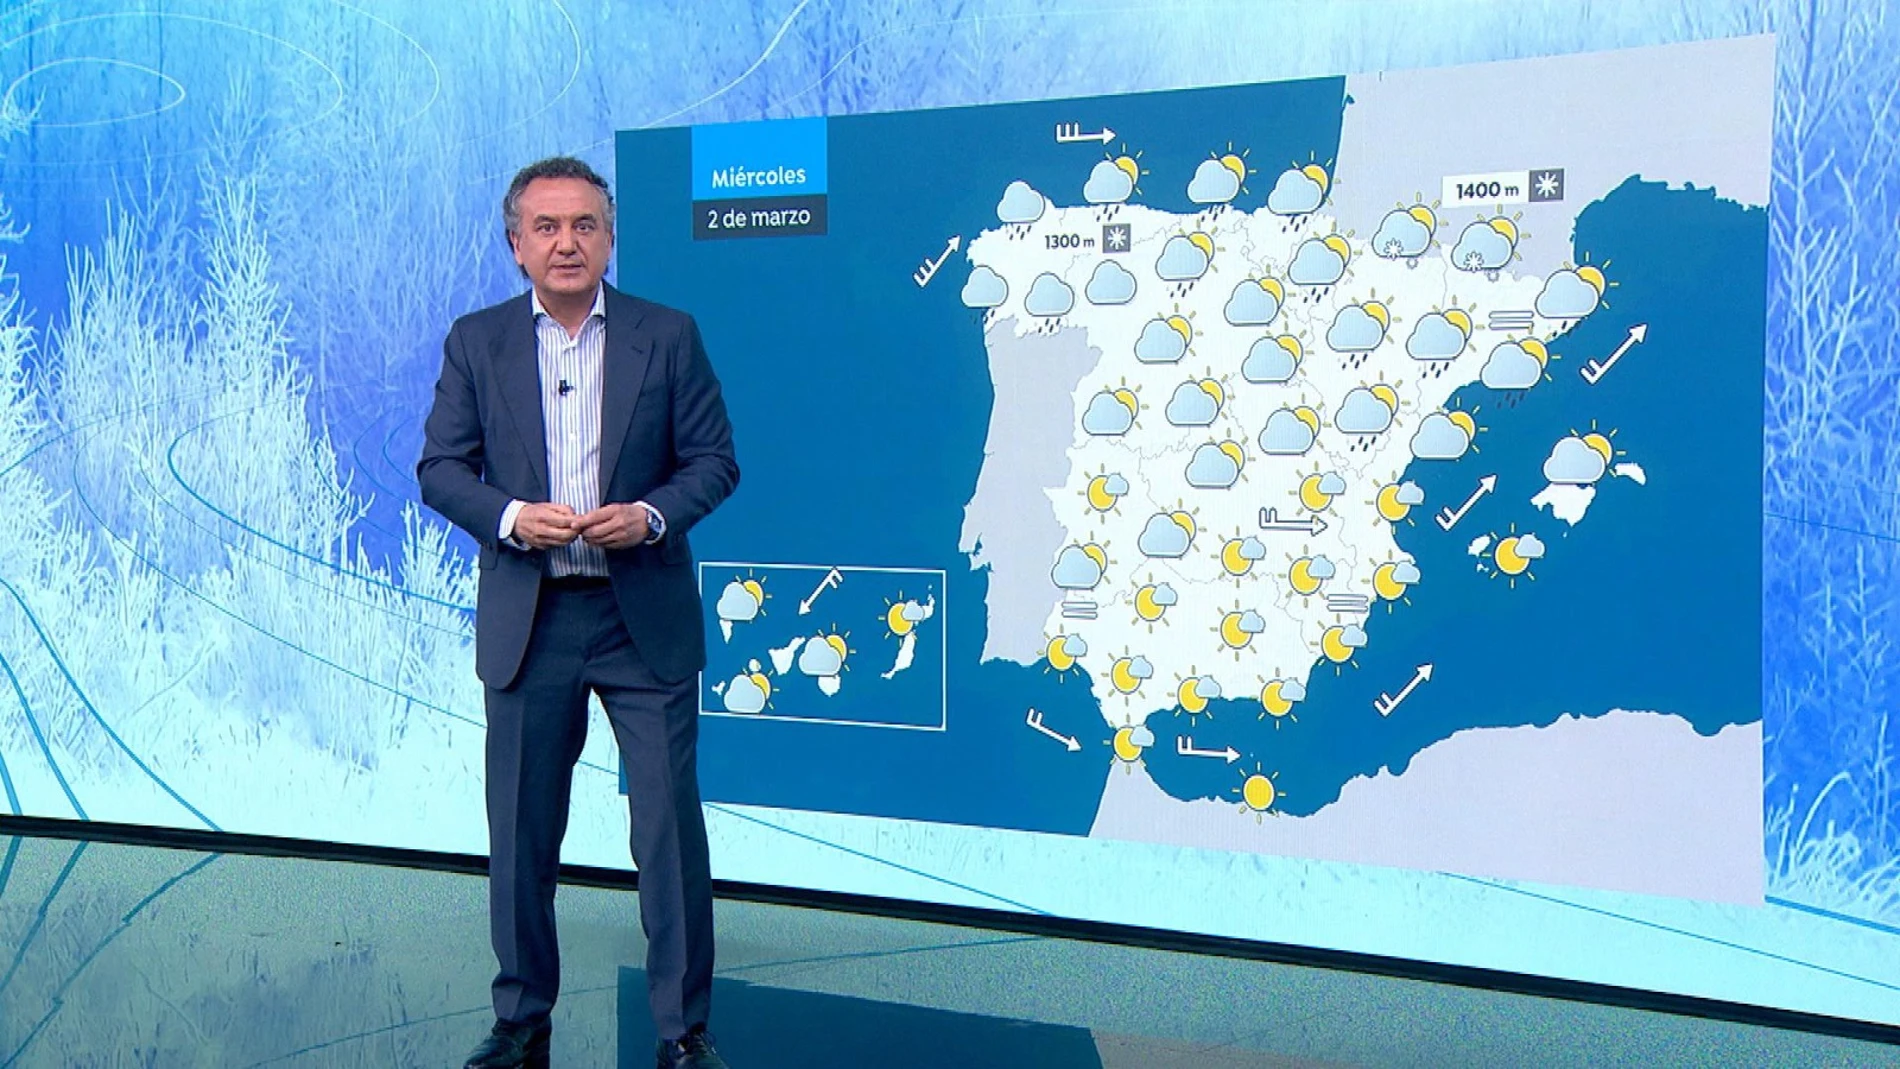 Llegan las lluvias a la Península desde Galicia al Cantábrico más oriental con un descenso de temperaturas significativo el jueves